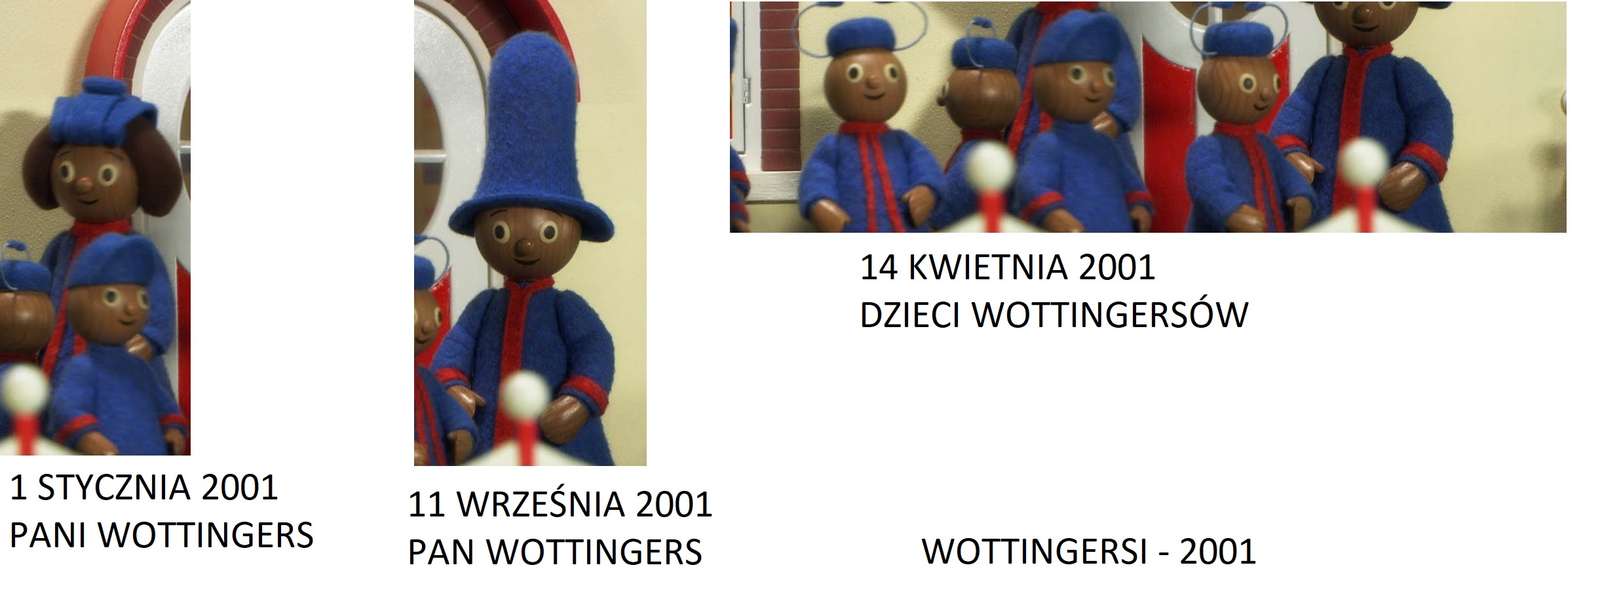 WOTTINGERSI - 2001 puzzle online ze zdjęcia